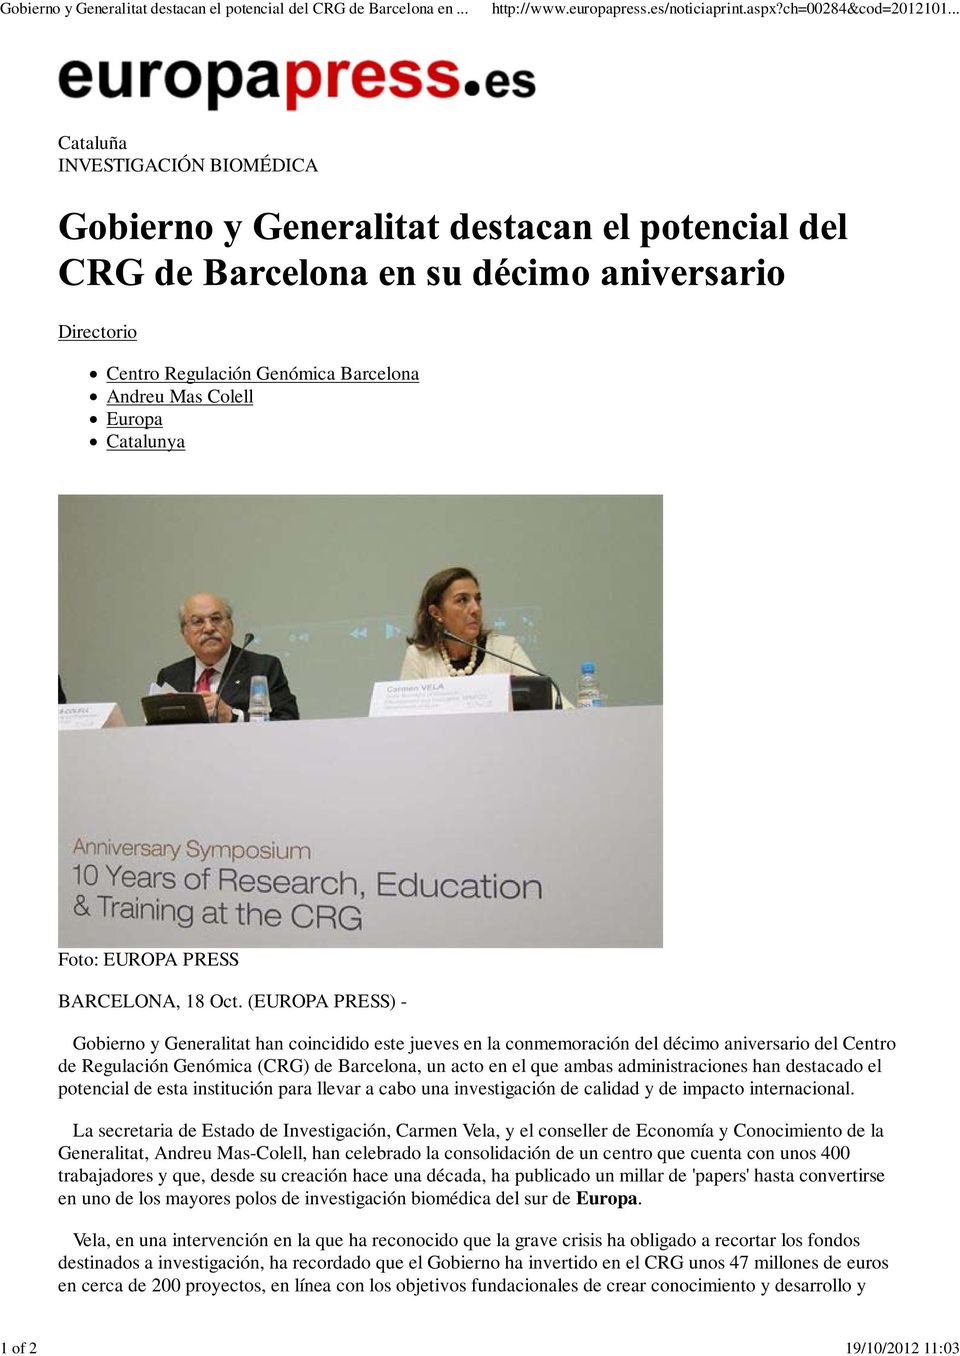 (EUROPA PRESS) - Gobierno y Generalitat han coincidido este jueves en la conmemoración del décimo aniversario del Centro de Regulación Genómica (CRG) de Barcelona, un acto en el que ambas